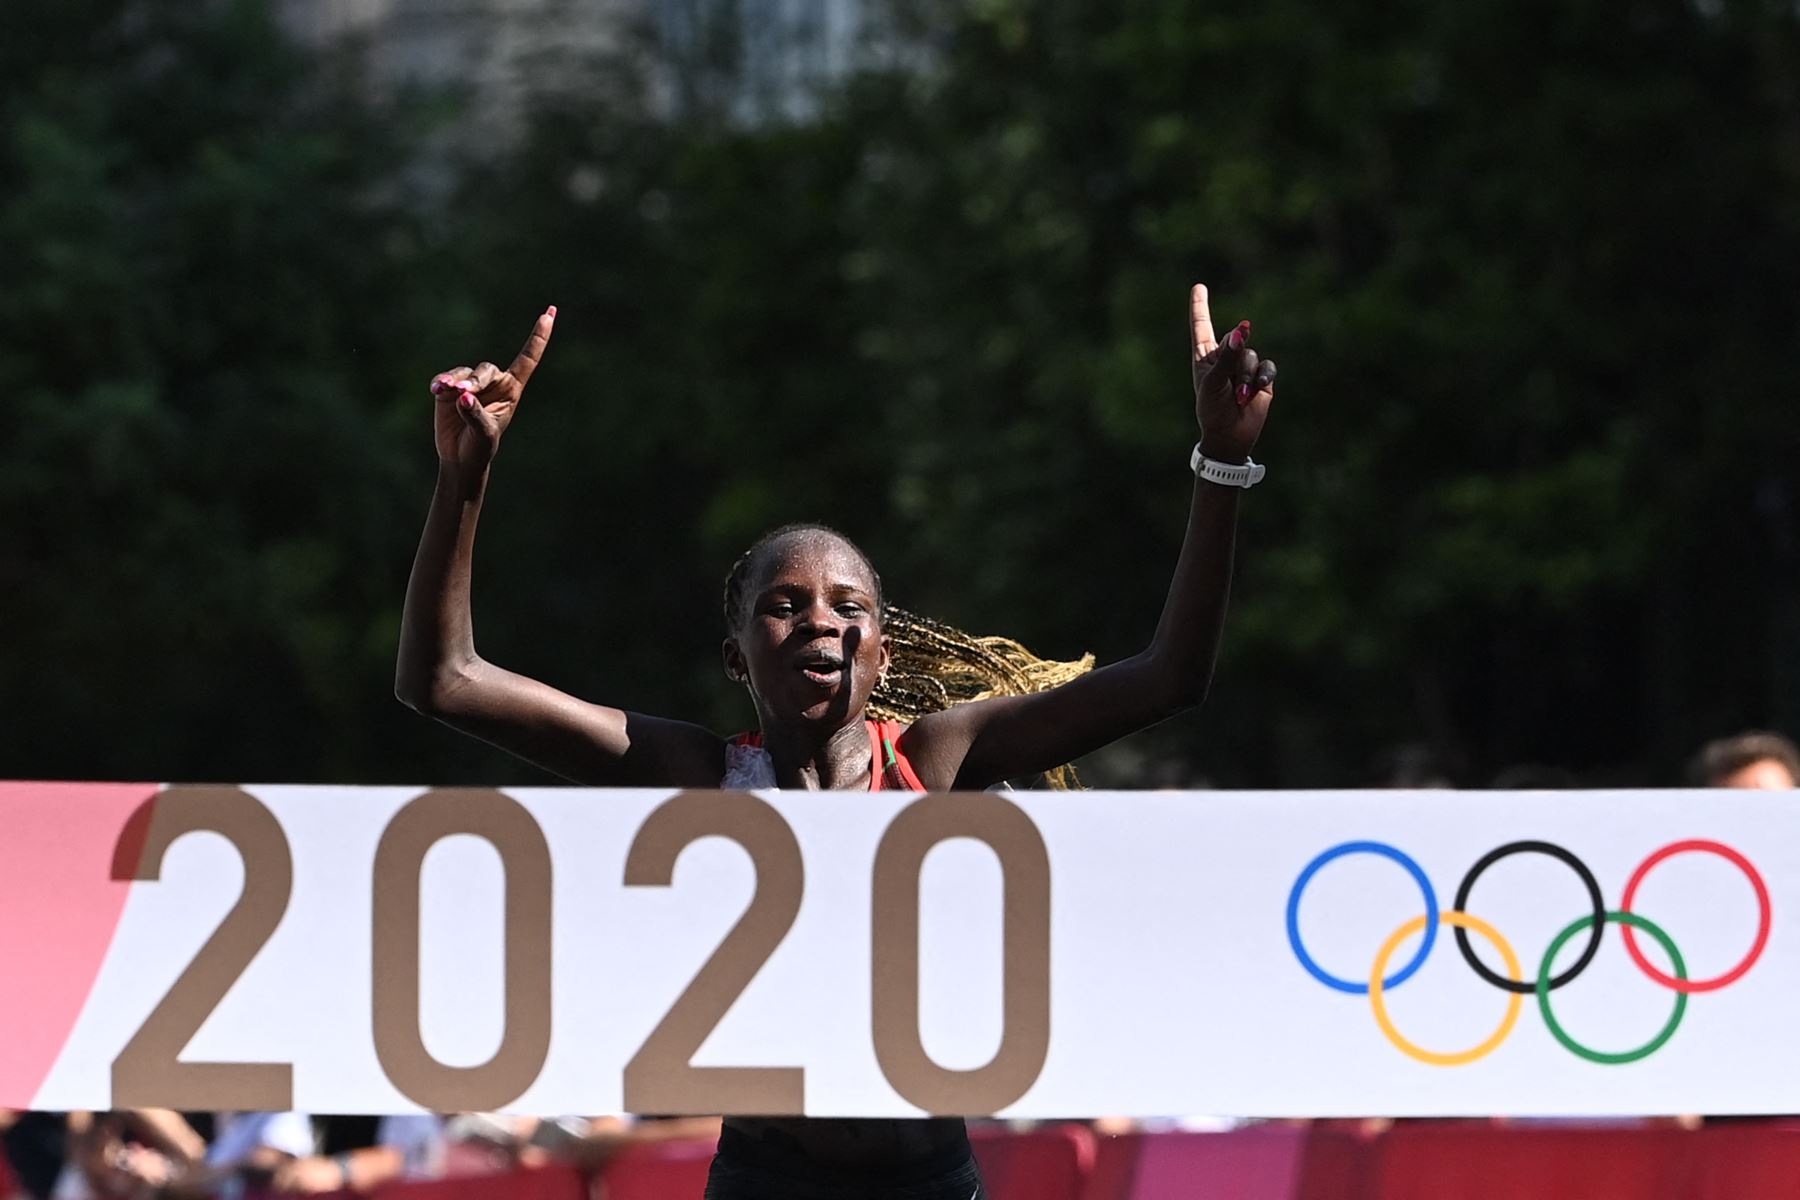 Peres Jepchirchir de Kenia gana la final de maratón femenino durante los Juegos Olímpicos de Tokio 2020 en Sapporo.
Foto: AFP